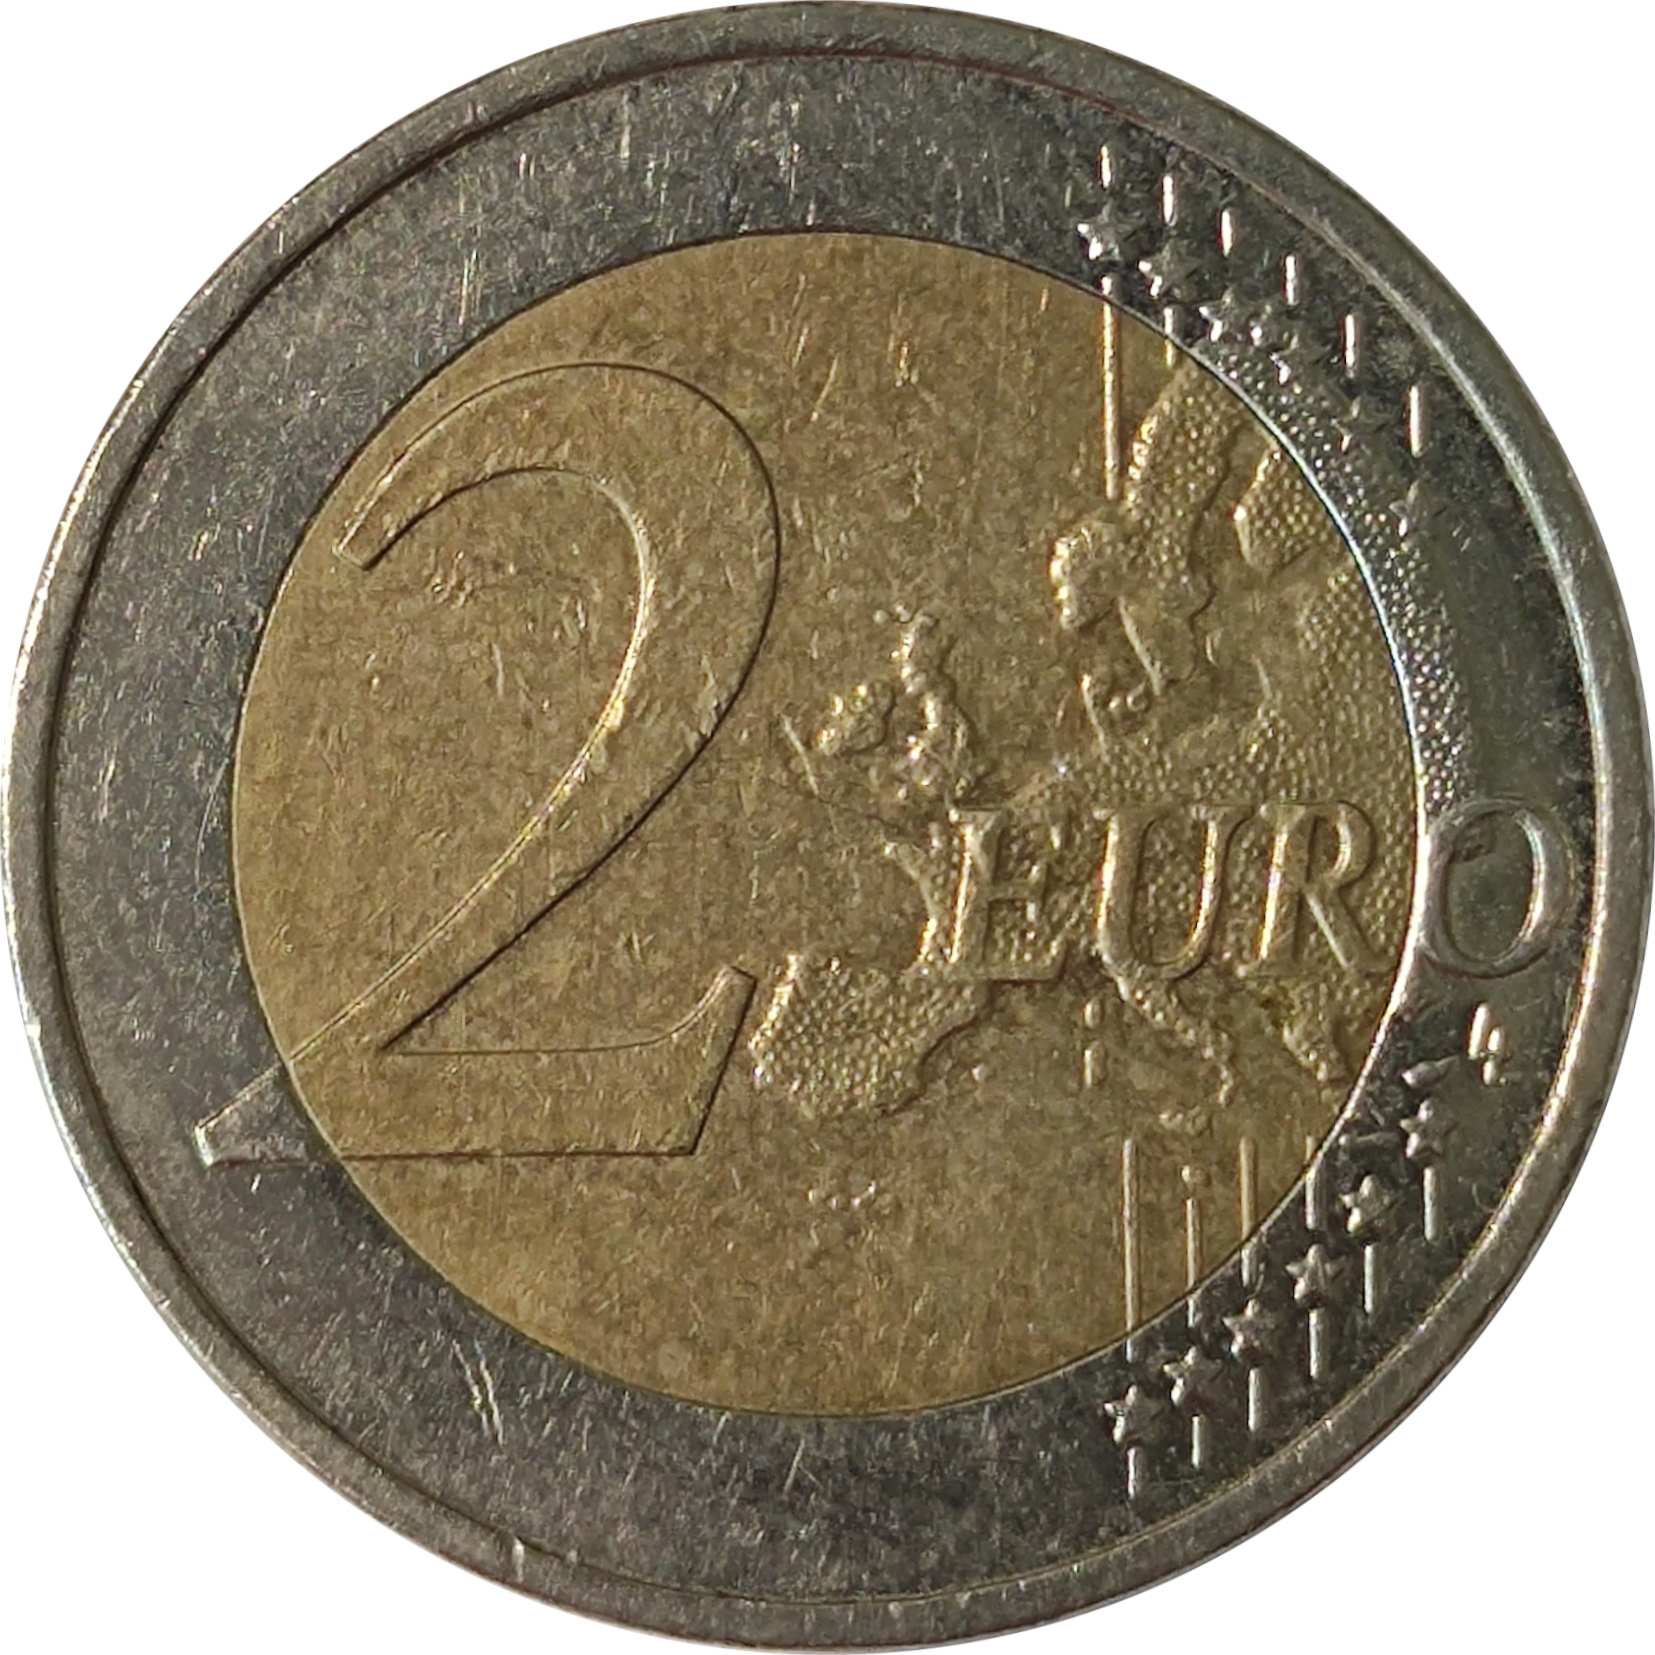 2 euro - Saarland